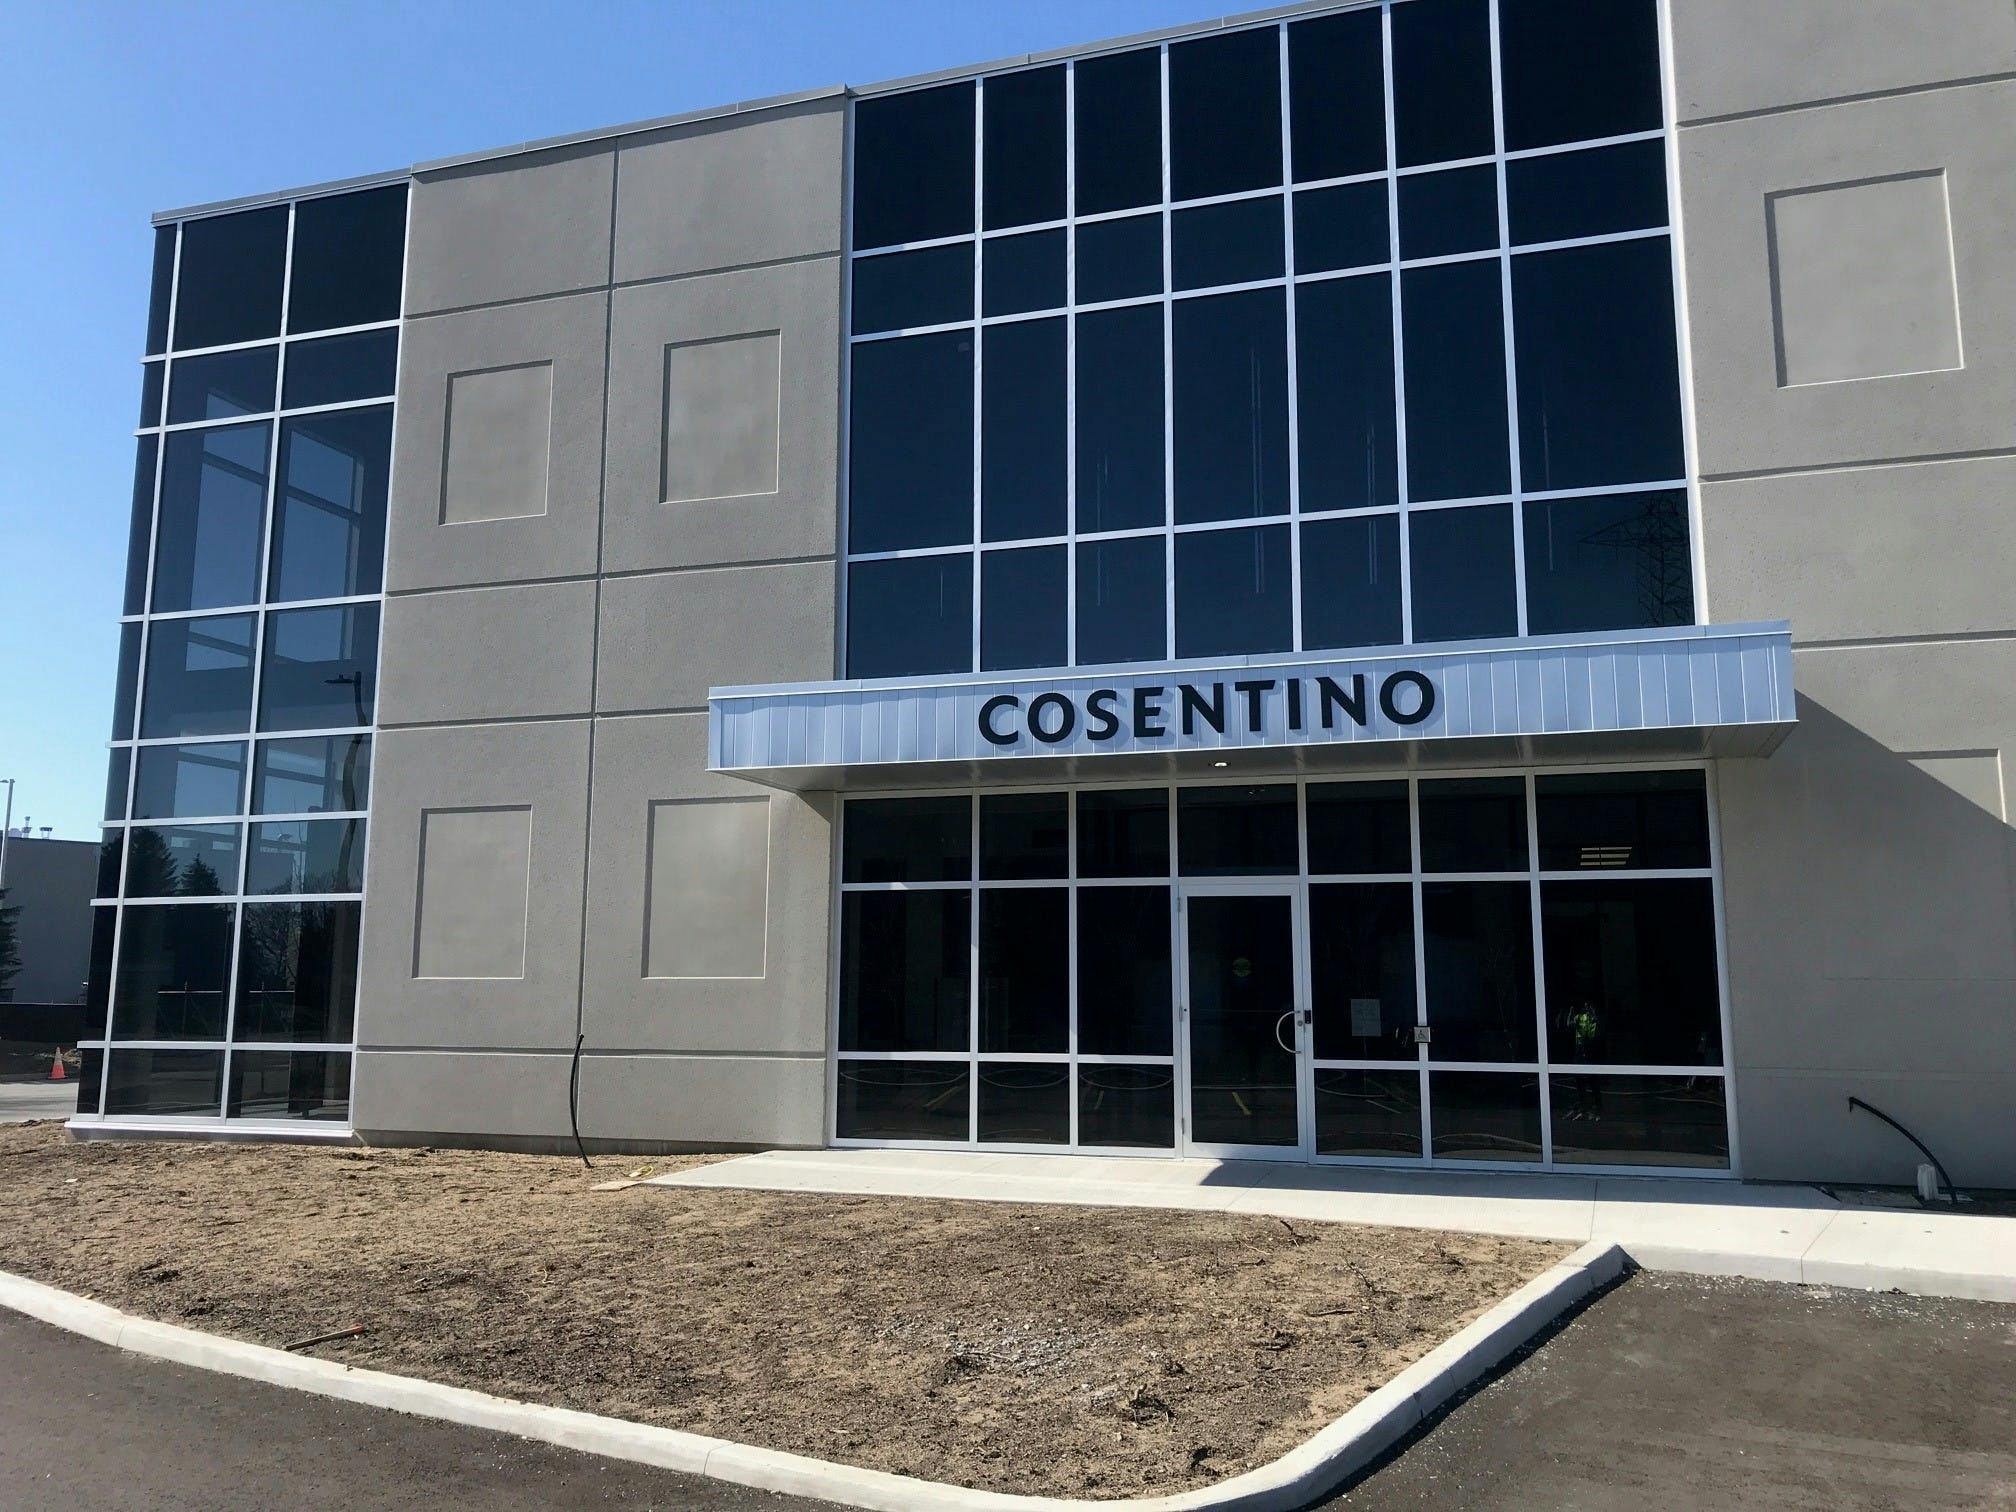 Numéro d'image 32 de la section actuelle de Cosentino annonce l’ouverture d’une nouvelle salle d'exposition et centre de distribution intégrés à Ottawa de Cosentino Canada